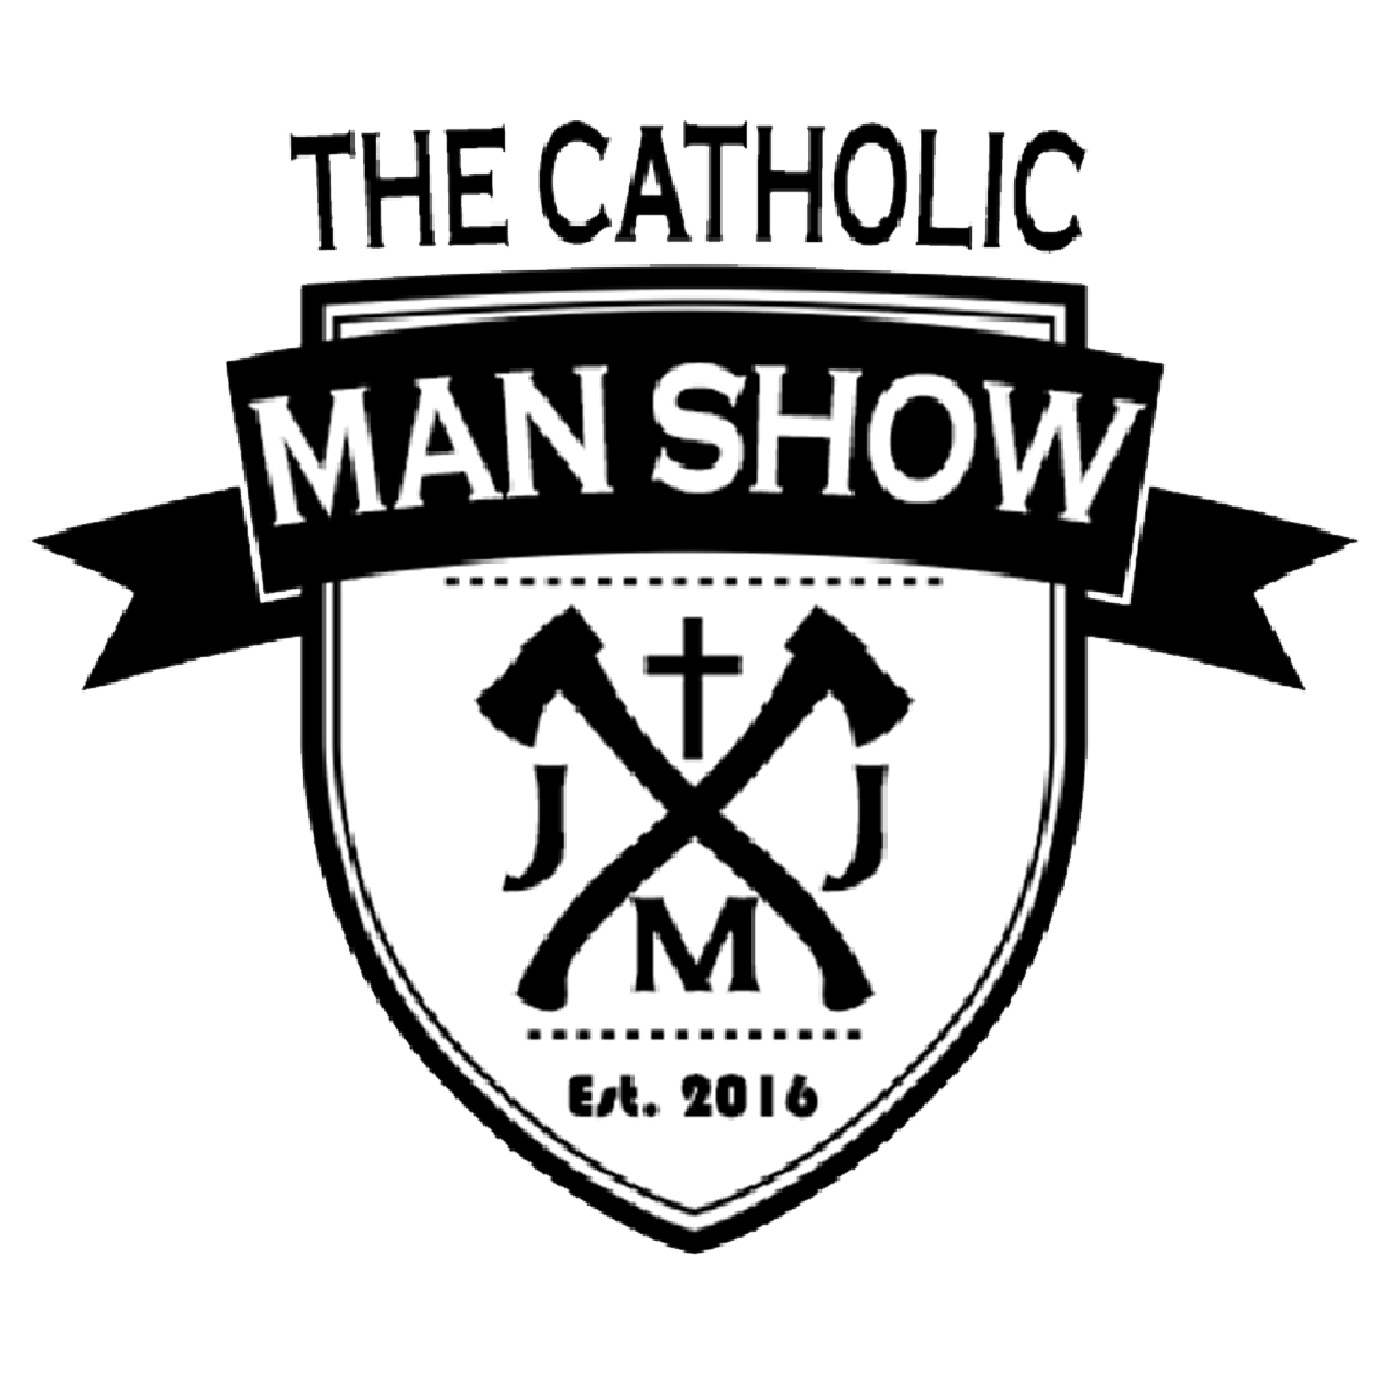 The Catholic Man Show Episode 18: The Virtue of Hope